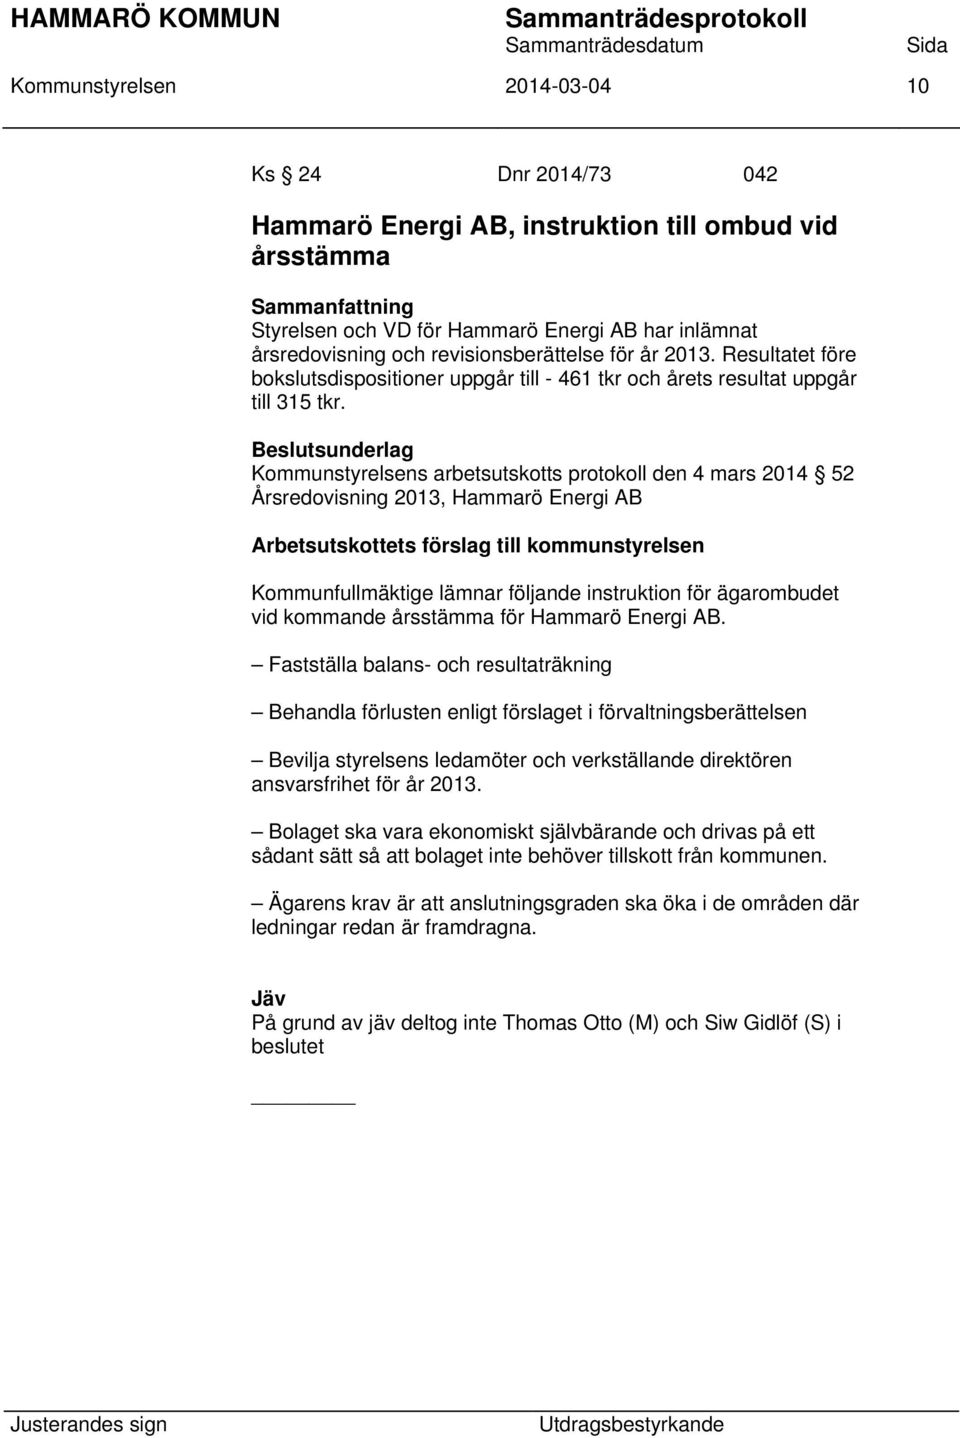 Kommunstyrelsens arbetsutskotts protokoll den 4 mars 2014 52 Årsredovisning 2013, Hammarö Energi AB Arbetsutskottets förslag till kommunstyrelsen Kommunfullmäktige lämnar följande instruktion för